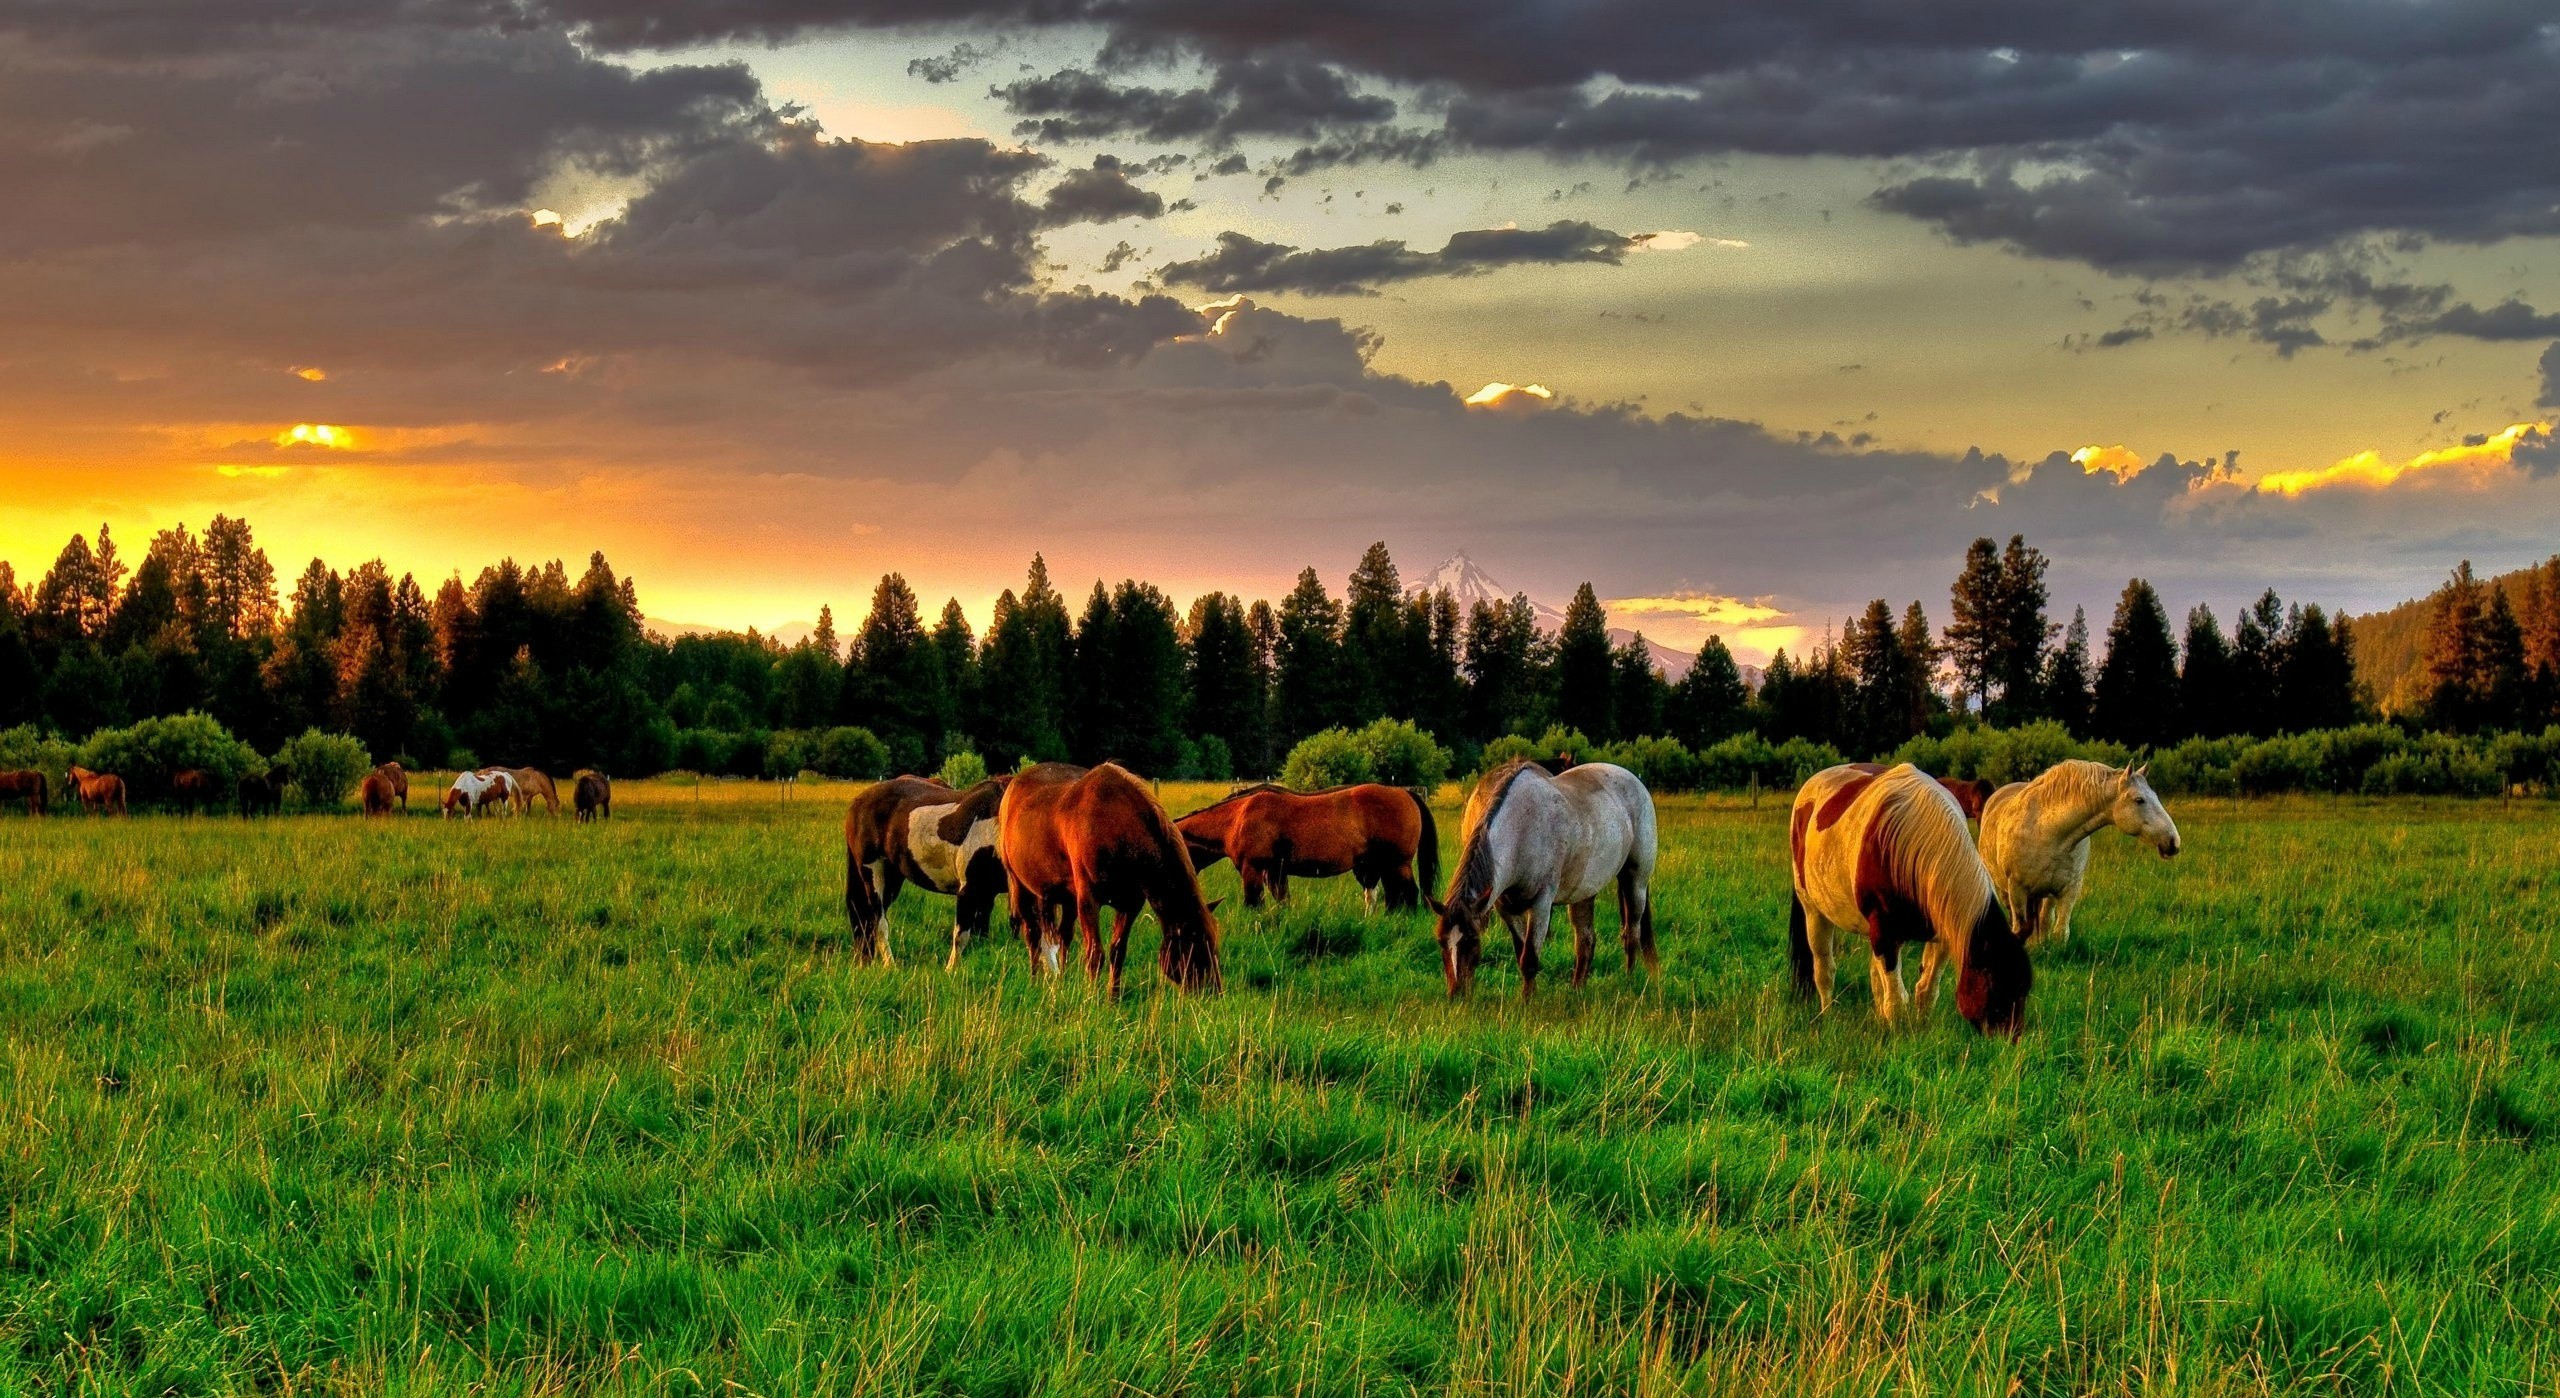 Horses Grazing In A Field Wallpaper 2560×1440 - Desktop Backgrounds Horses , HD Wallpaper & Backgrounds